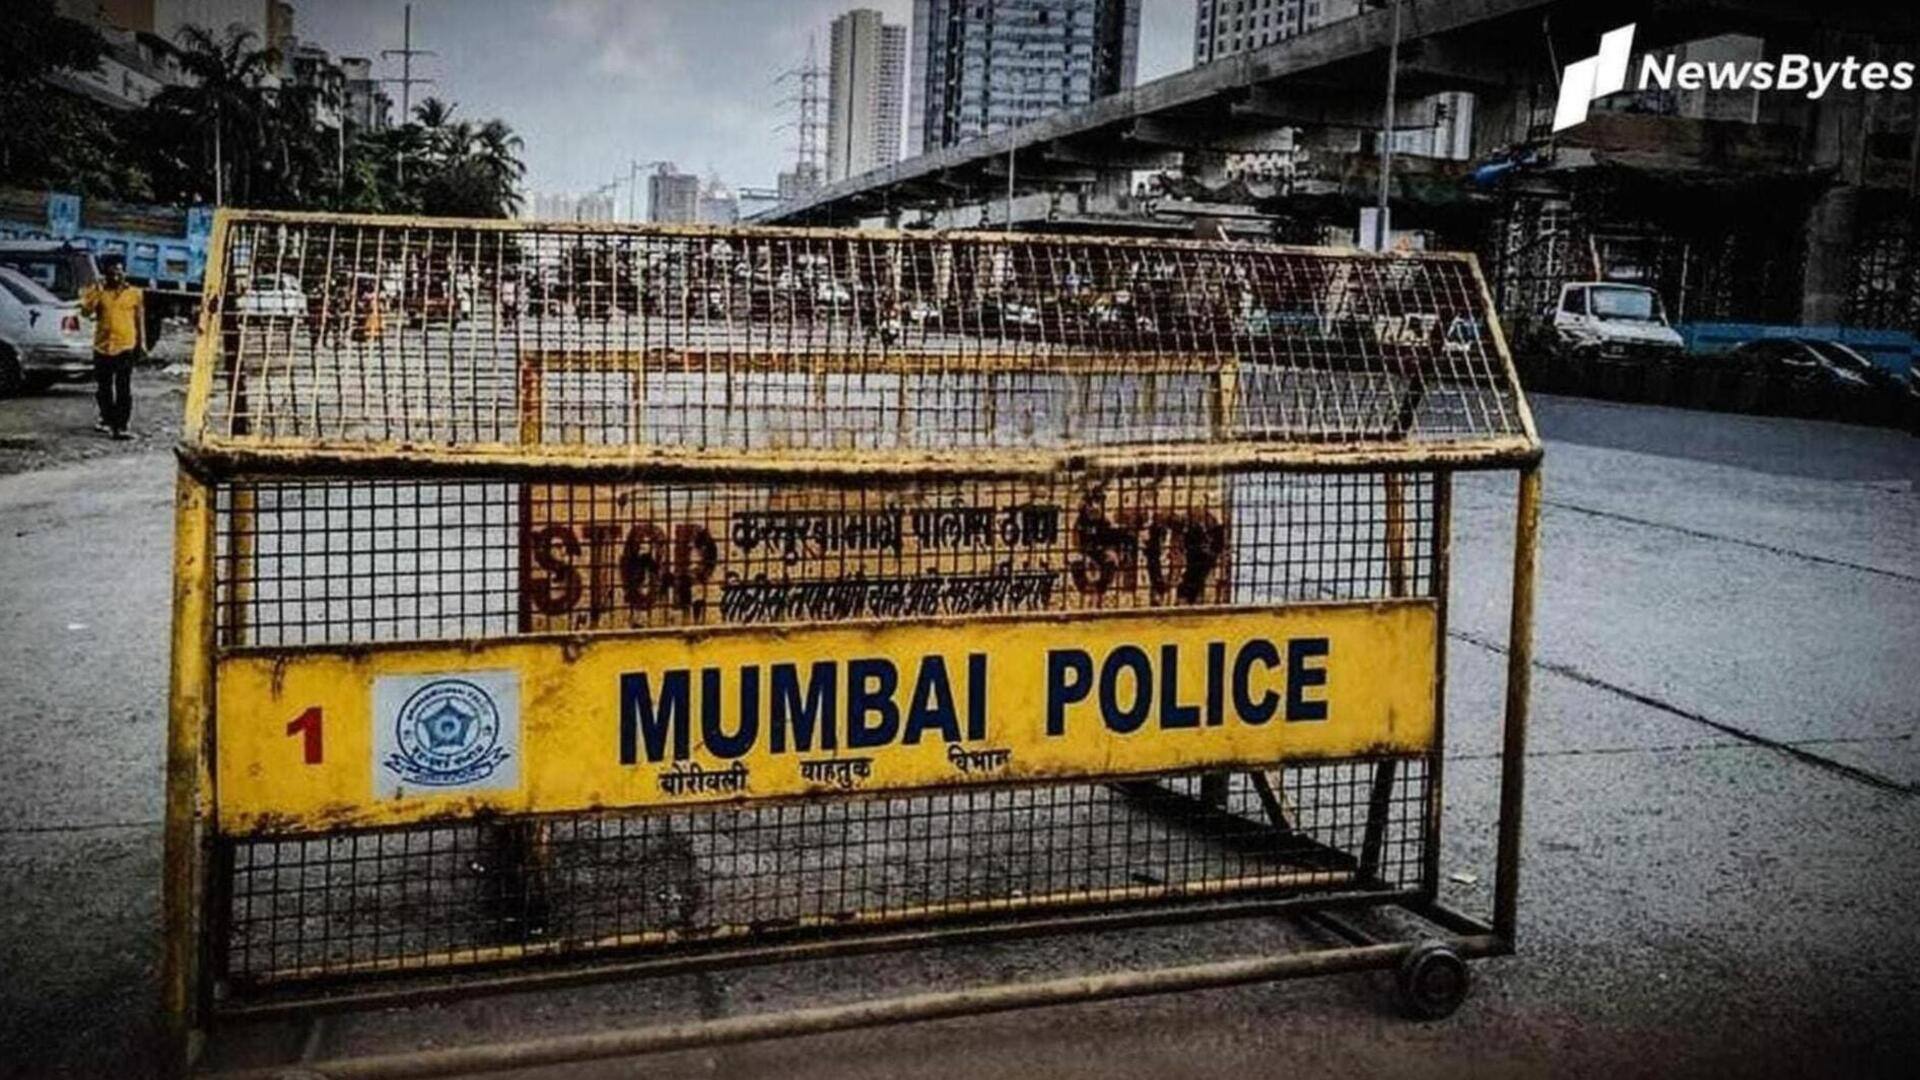 मुंबई: मराठी होने के कारण दंपति को सोसाइटी में फ्लैट देने से इनकार किया, फोन छीना